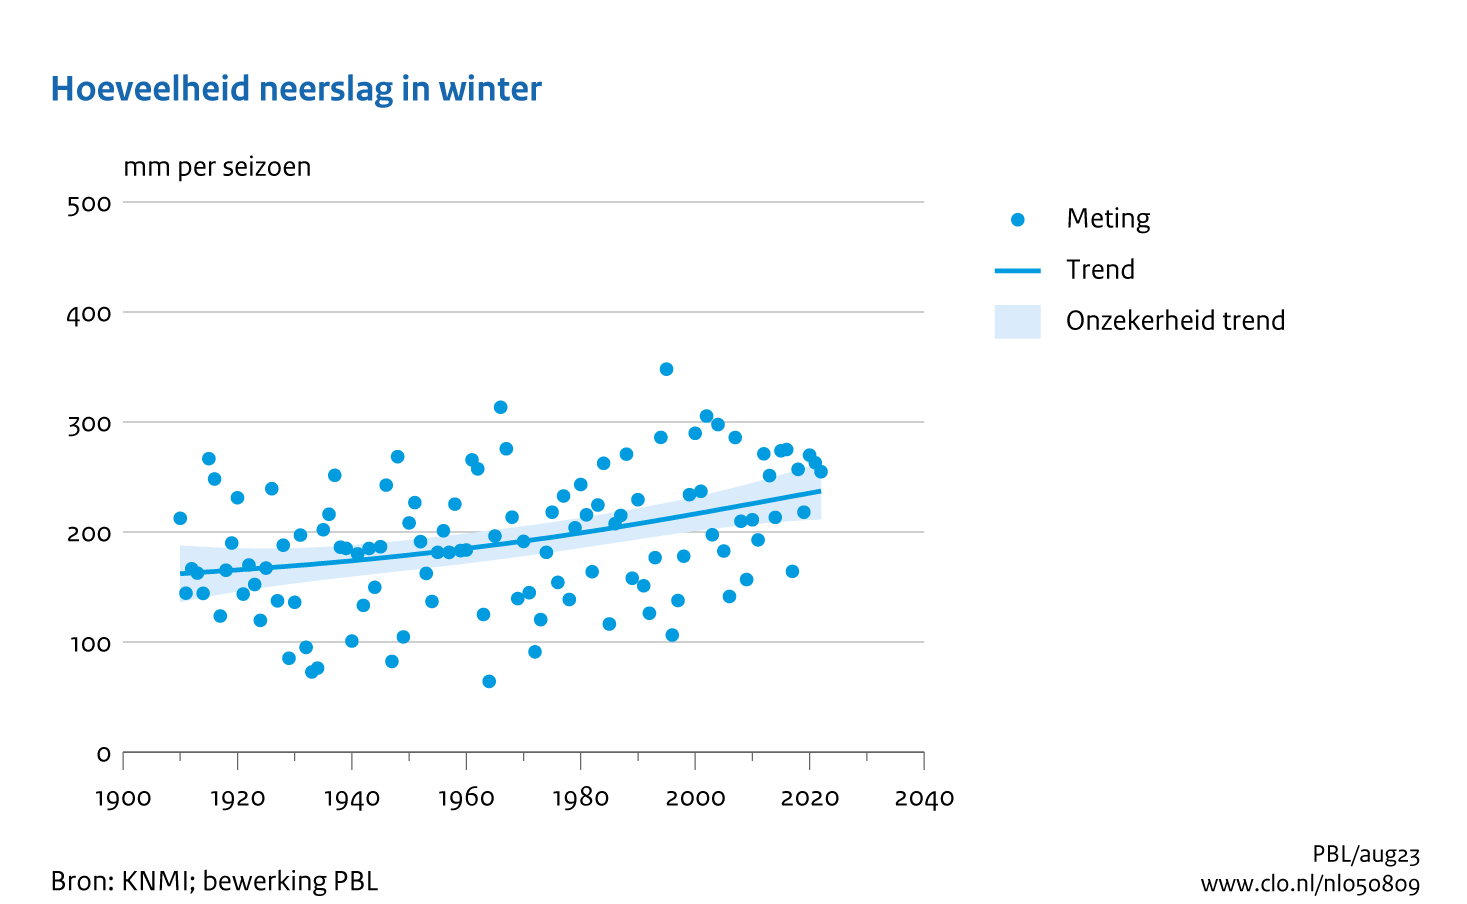 Figuur  Jaarlijkse hoeveelheid neerslag winter in Nederland. In de rest van de tekst wordt deze figuur uitgebreider uitgelegd.